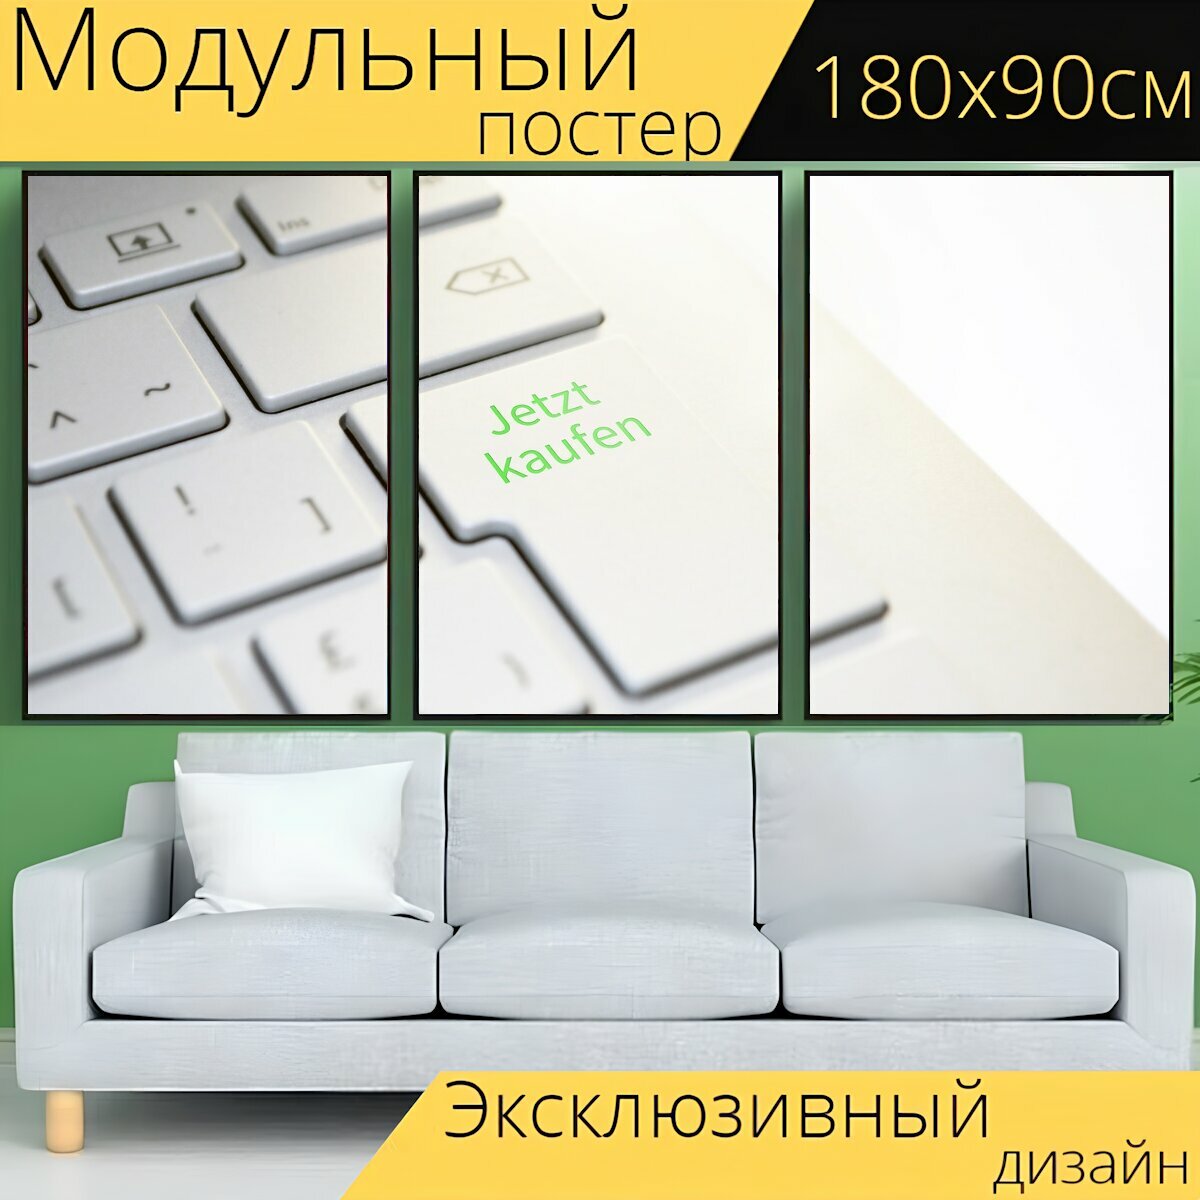 Модульный постер "Купить сейчас, клавиатура, введите" 180 x 90 см. для интерьера